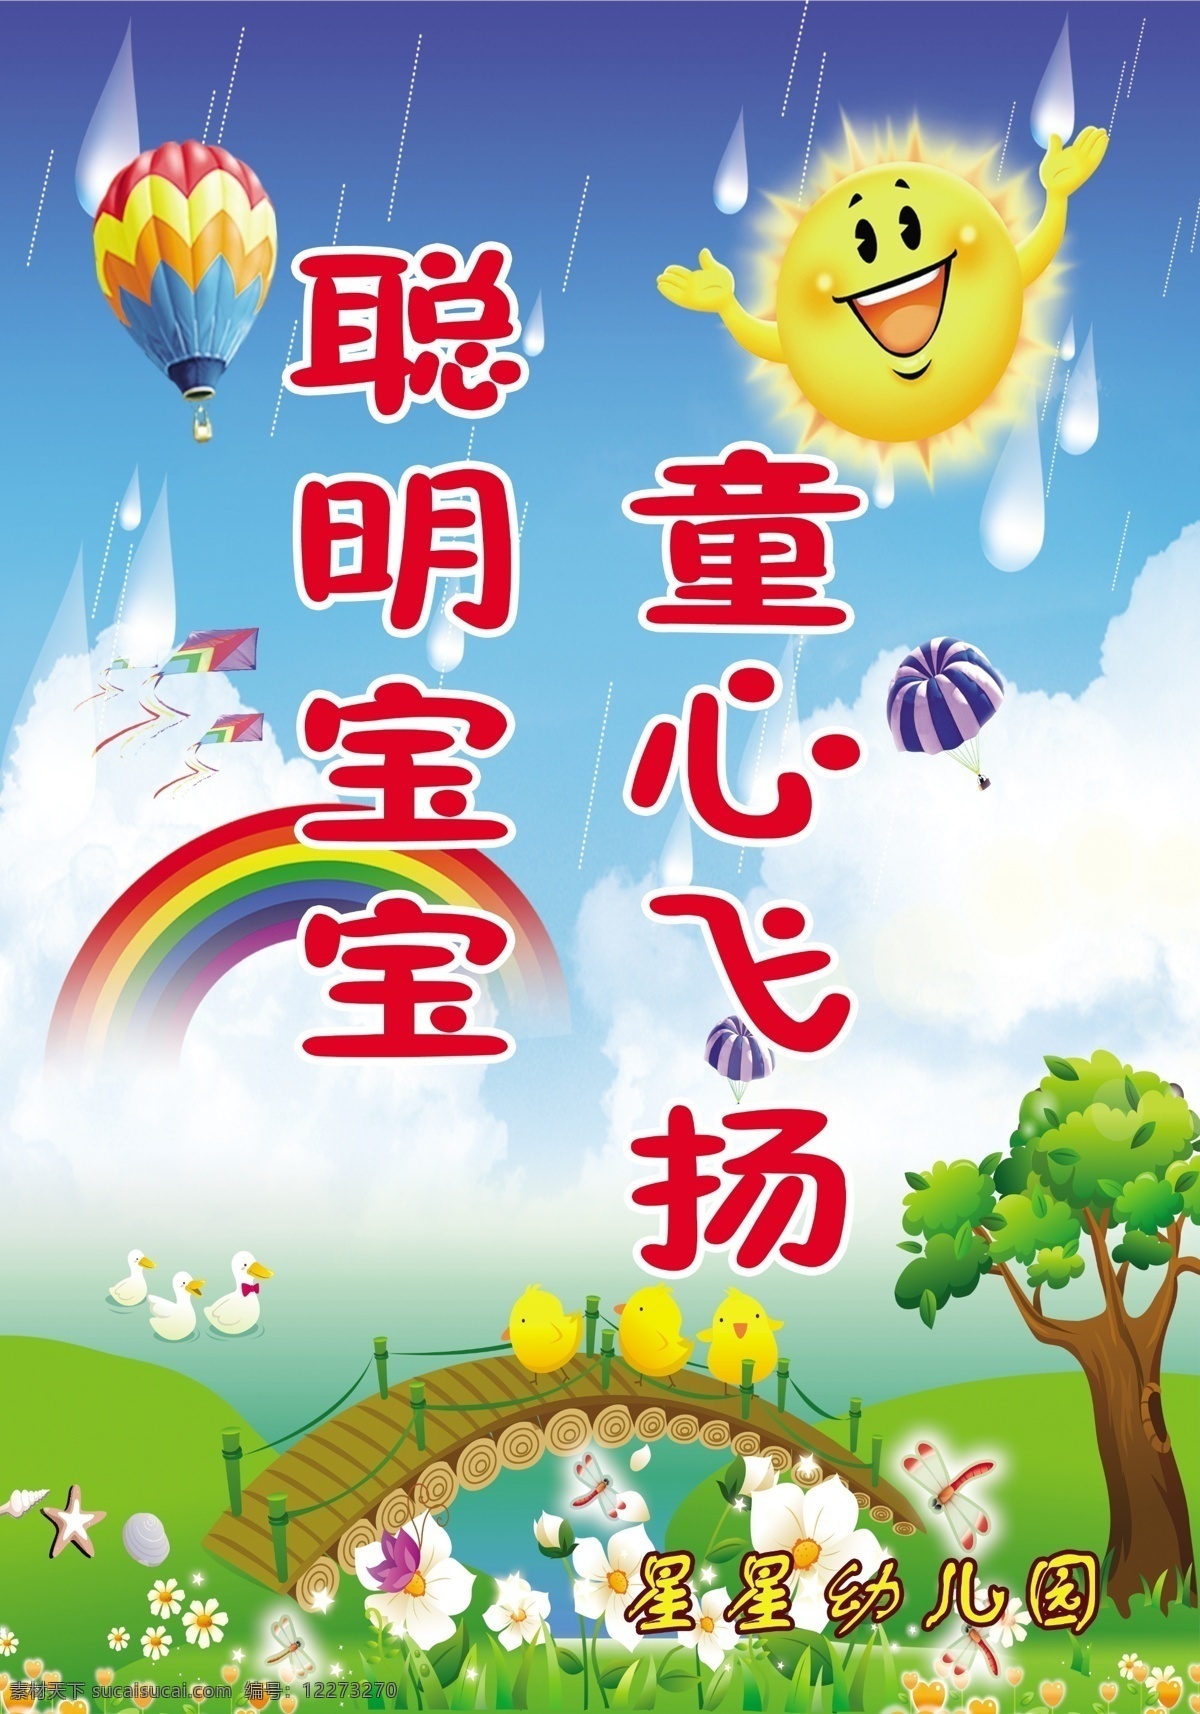 星星 幼儿园 标语 展板 幼儿园标语 星星幼儿园 卡通 太阳 彩虹 热气球 蓝天 白云 草地 儿童 展板模板 广告设计模板 源文件